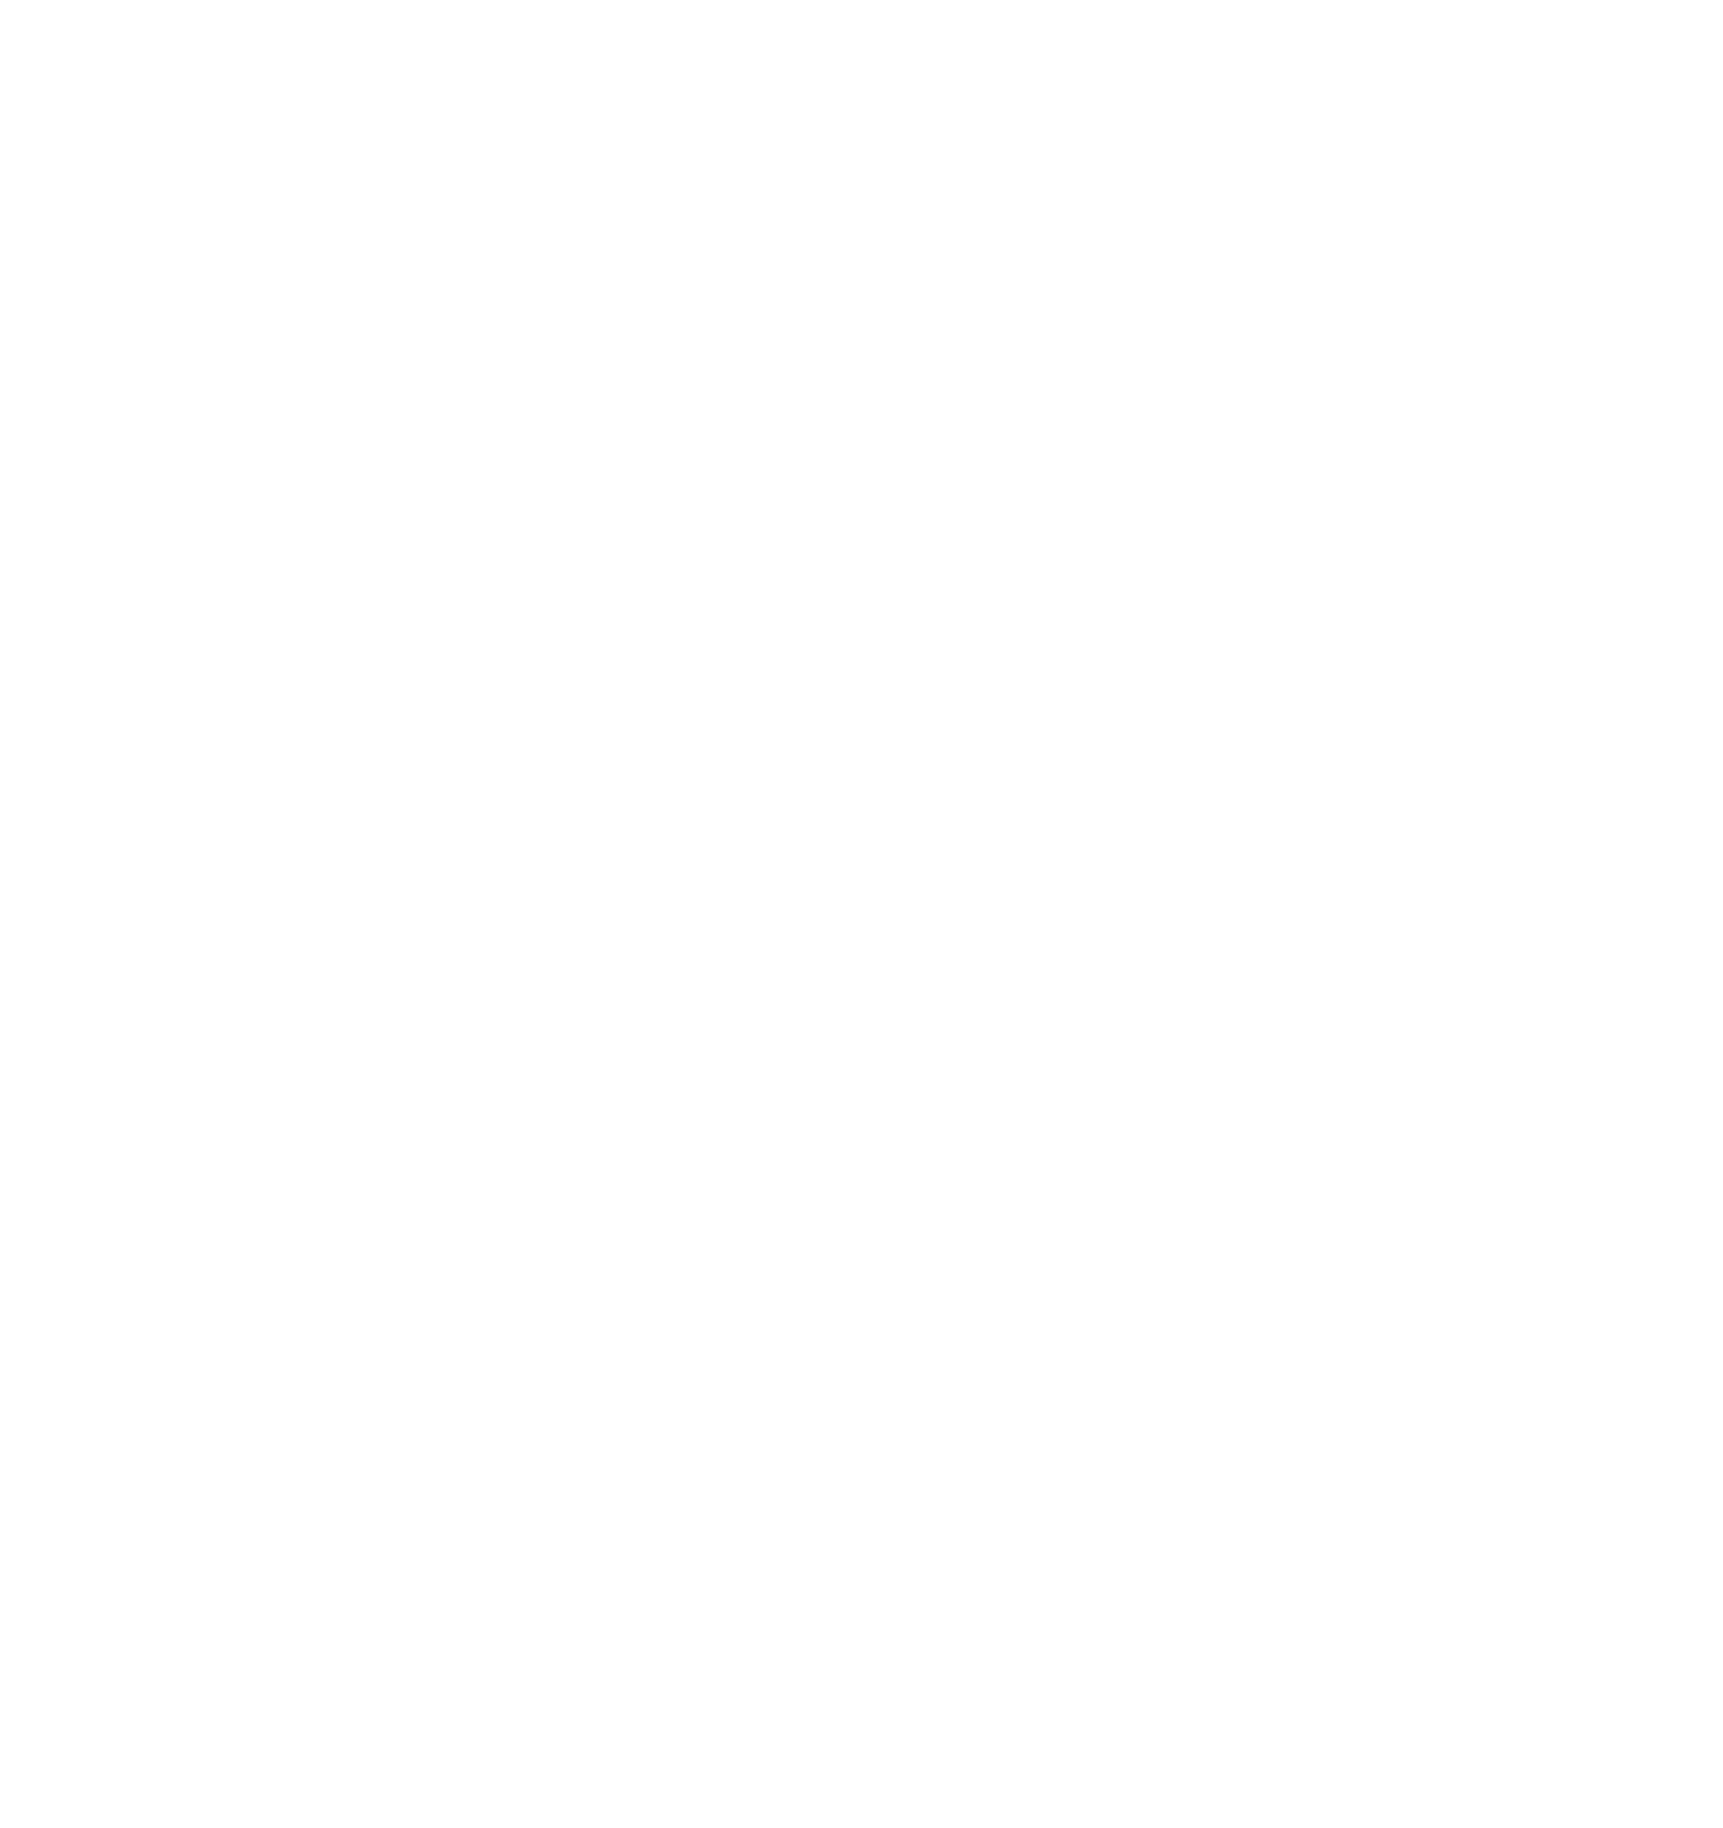 ERA_REARDON REALTY_WHITE_Vertical_RGB-01